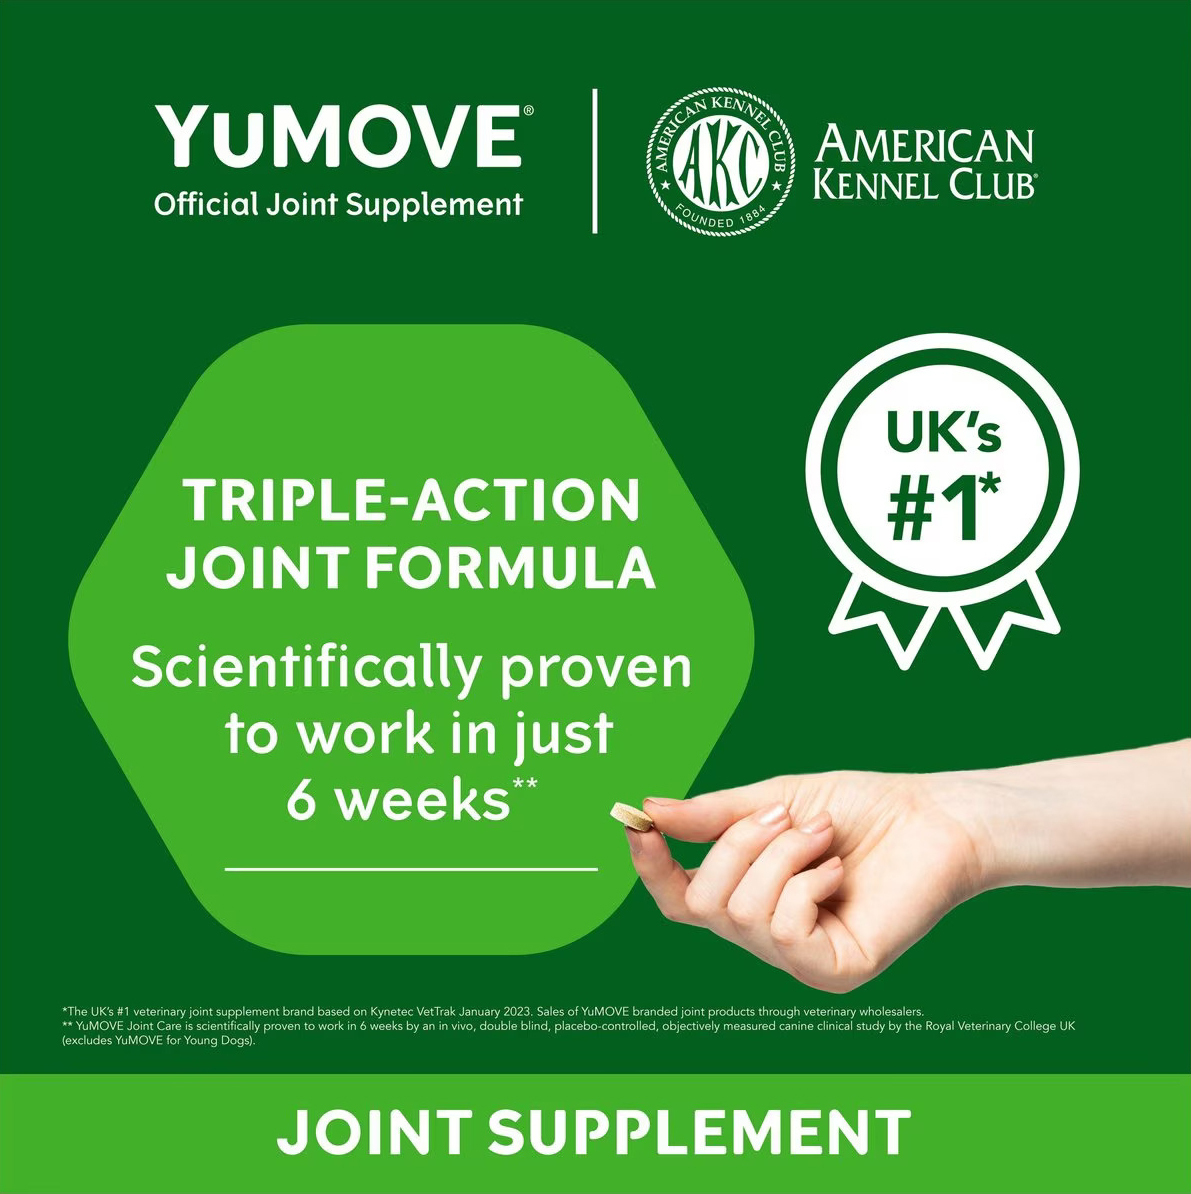 YuMOVE Joint Care Young | Tablete pentru protecția cartilajelor pentru câini în creștere - zoom